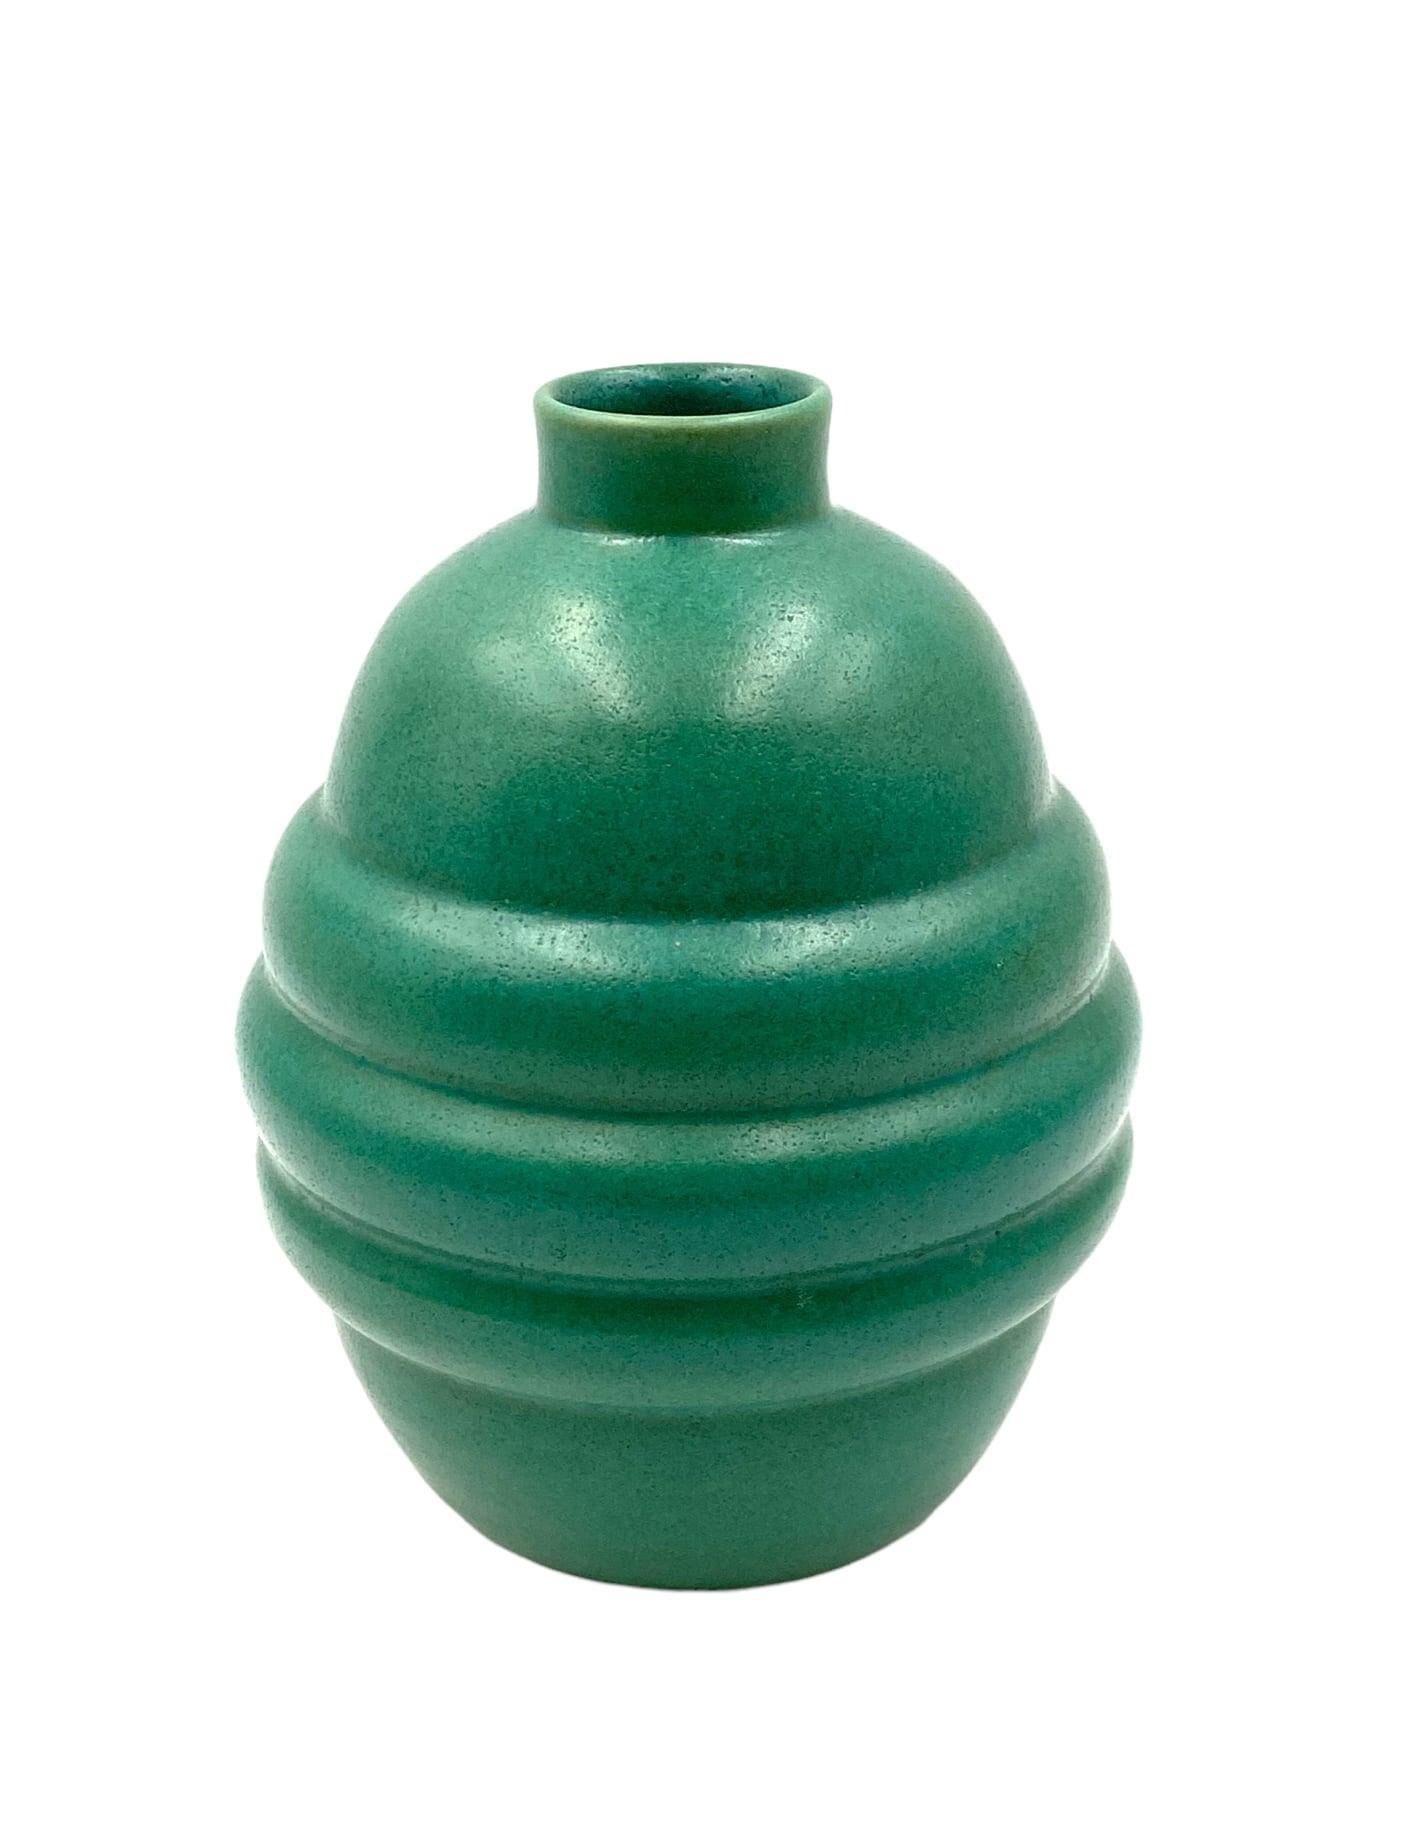 Ceramic Art Déco Turquoise Faience Vase, France, 1940s For Sale